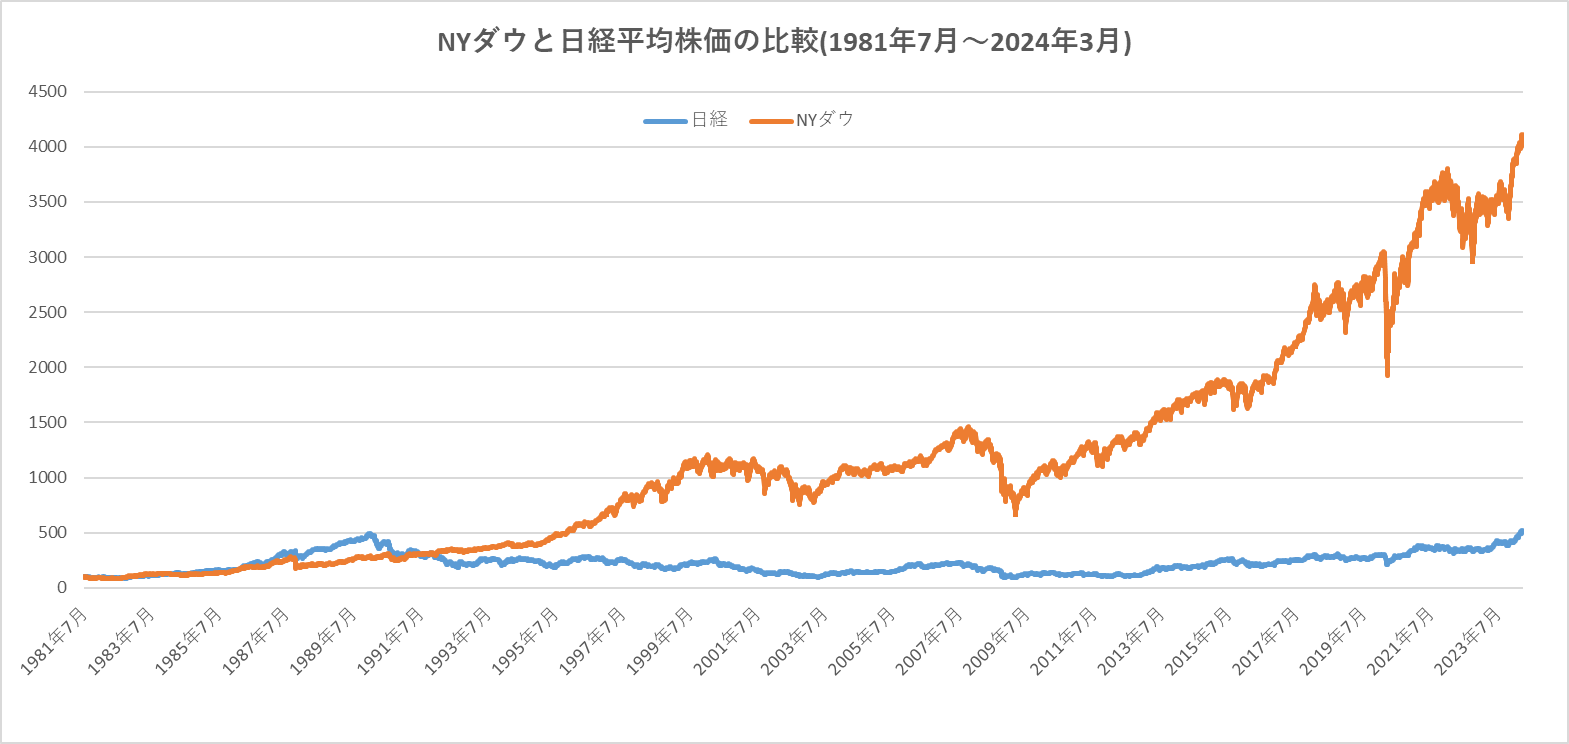 NYダウ(ダウ工業株30種平均)と日経平均の比較（1981年7月から2021年7月）